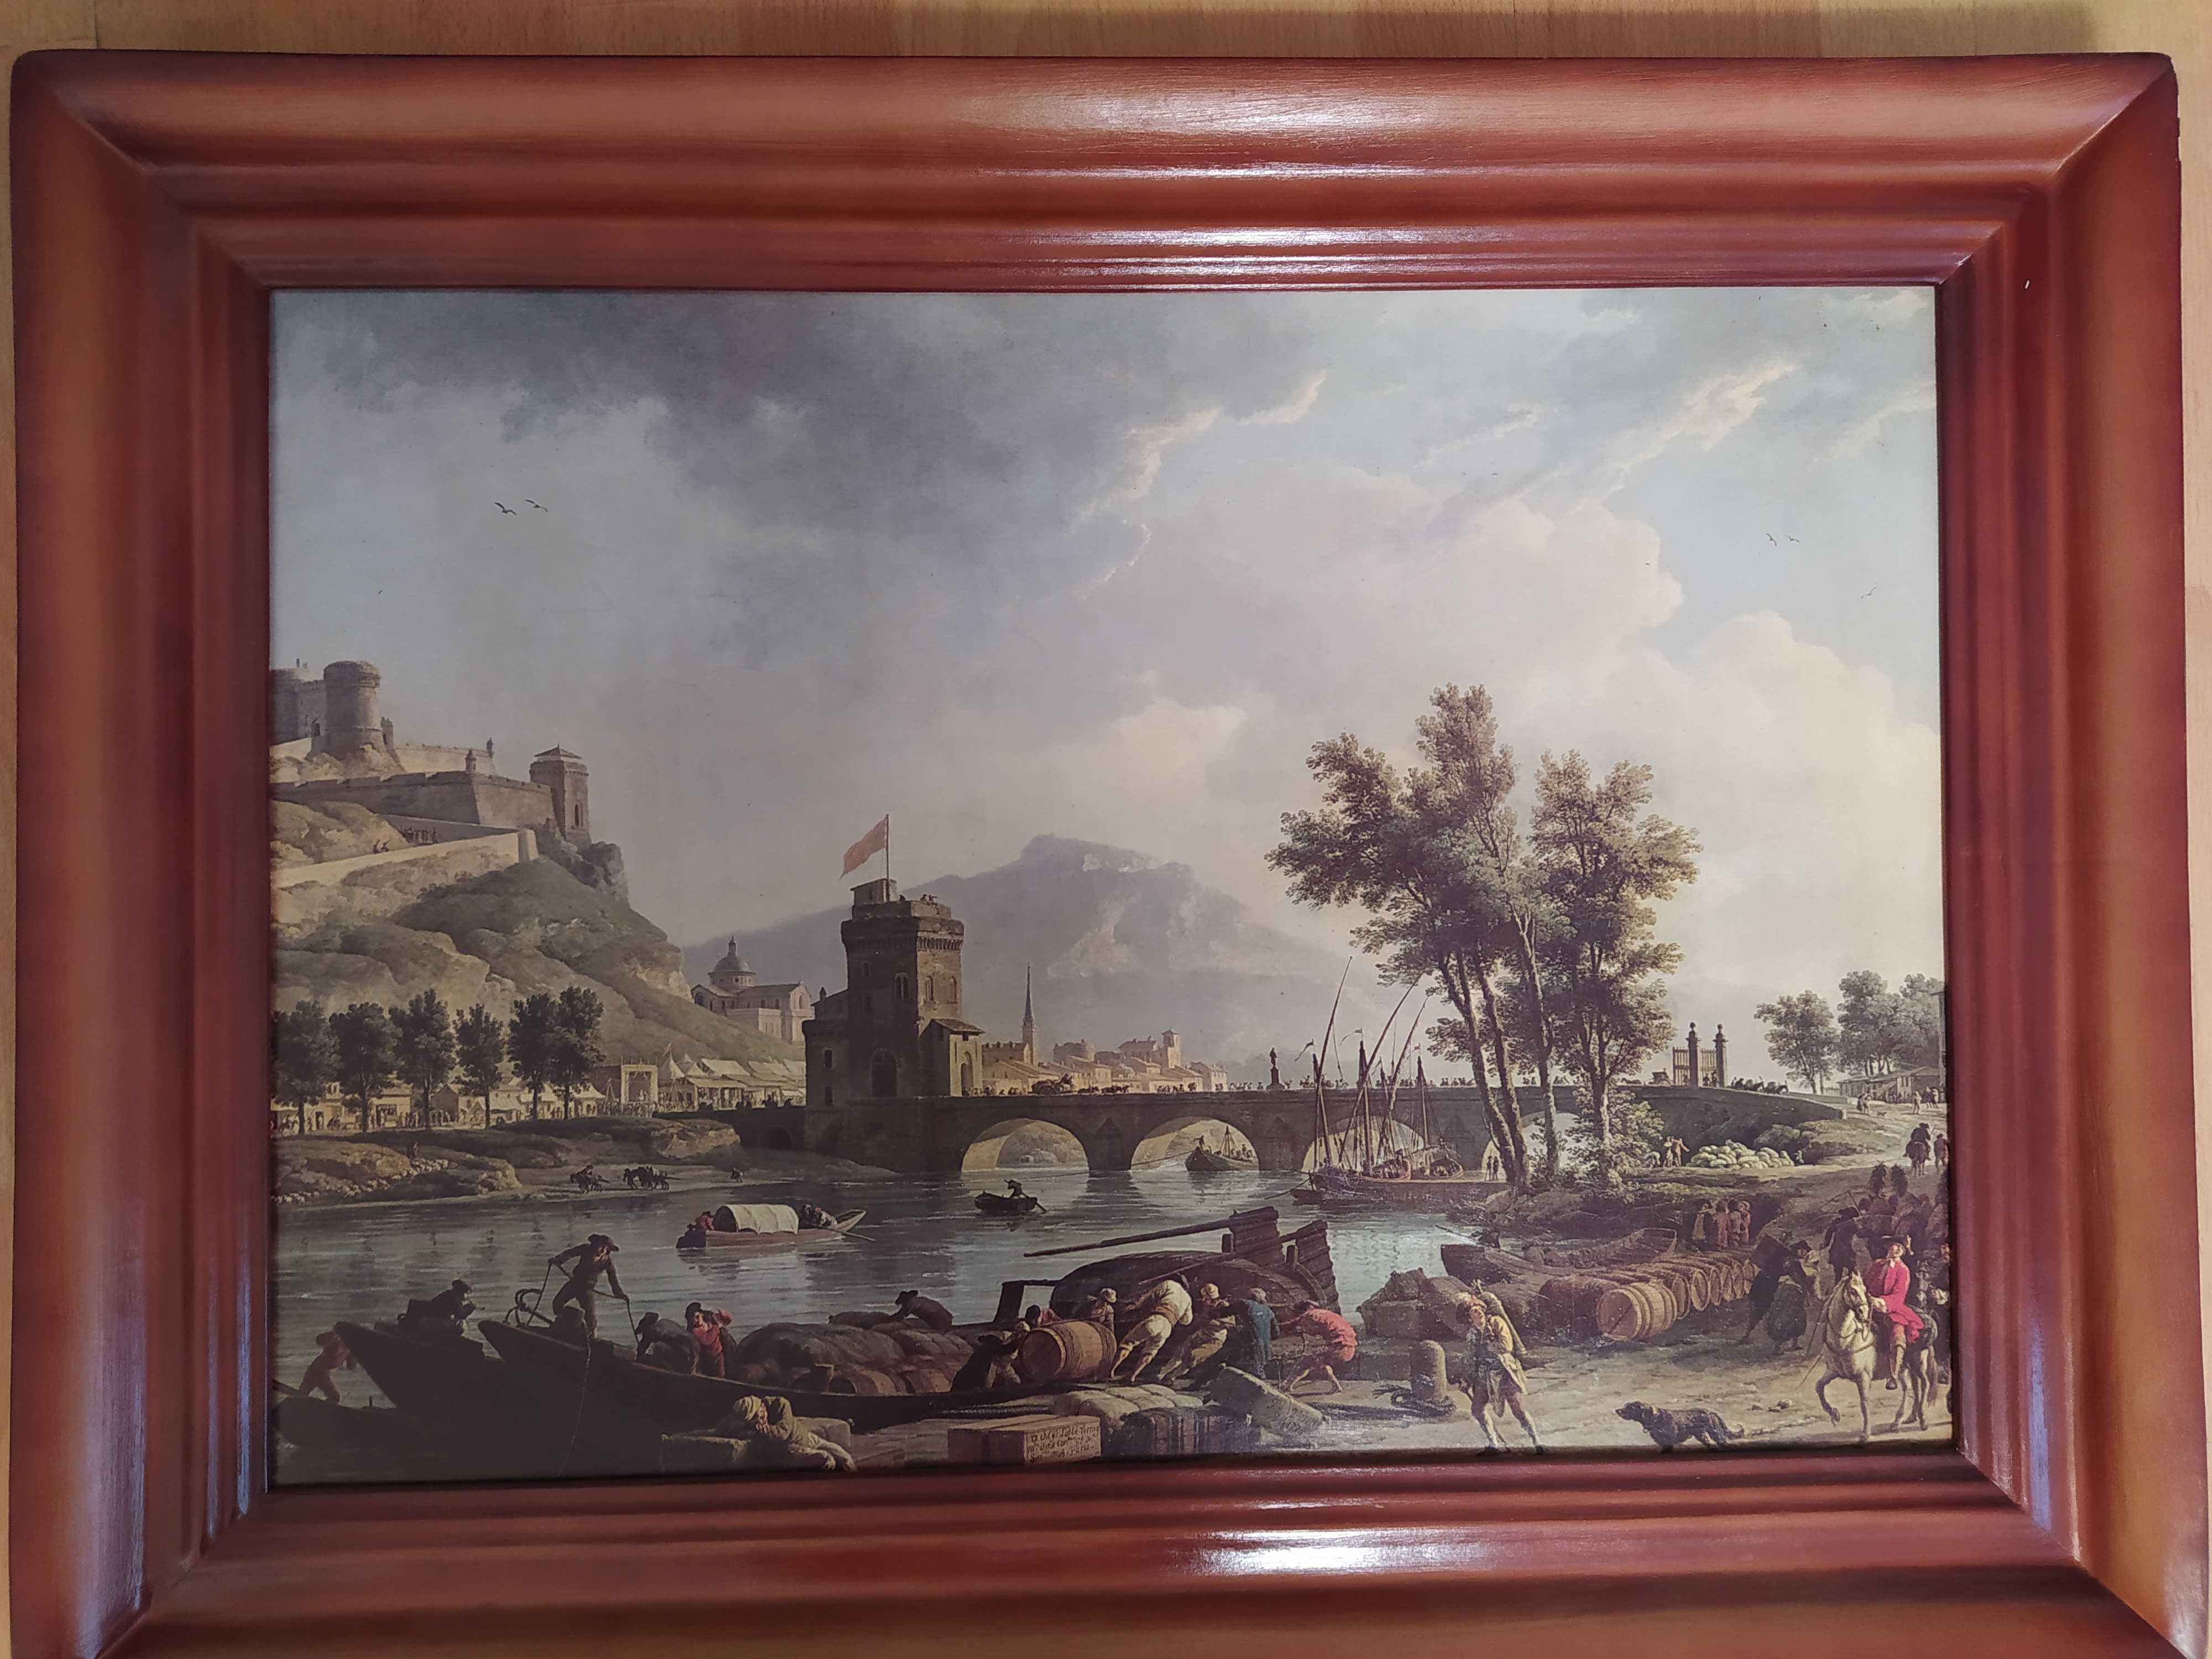 Obraz wyładunek barki 
Claude-Joseph Vernet włoska reprodukcja